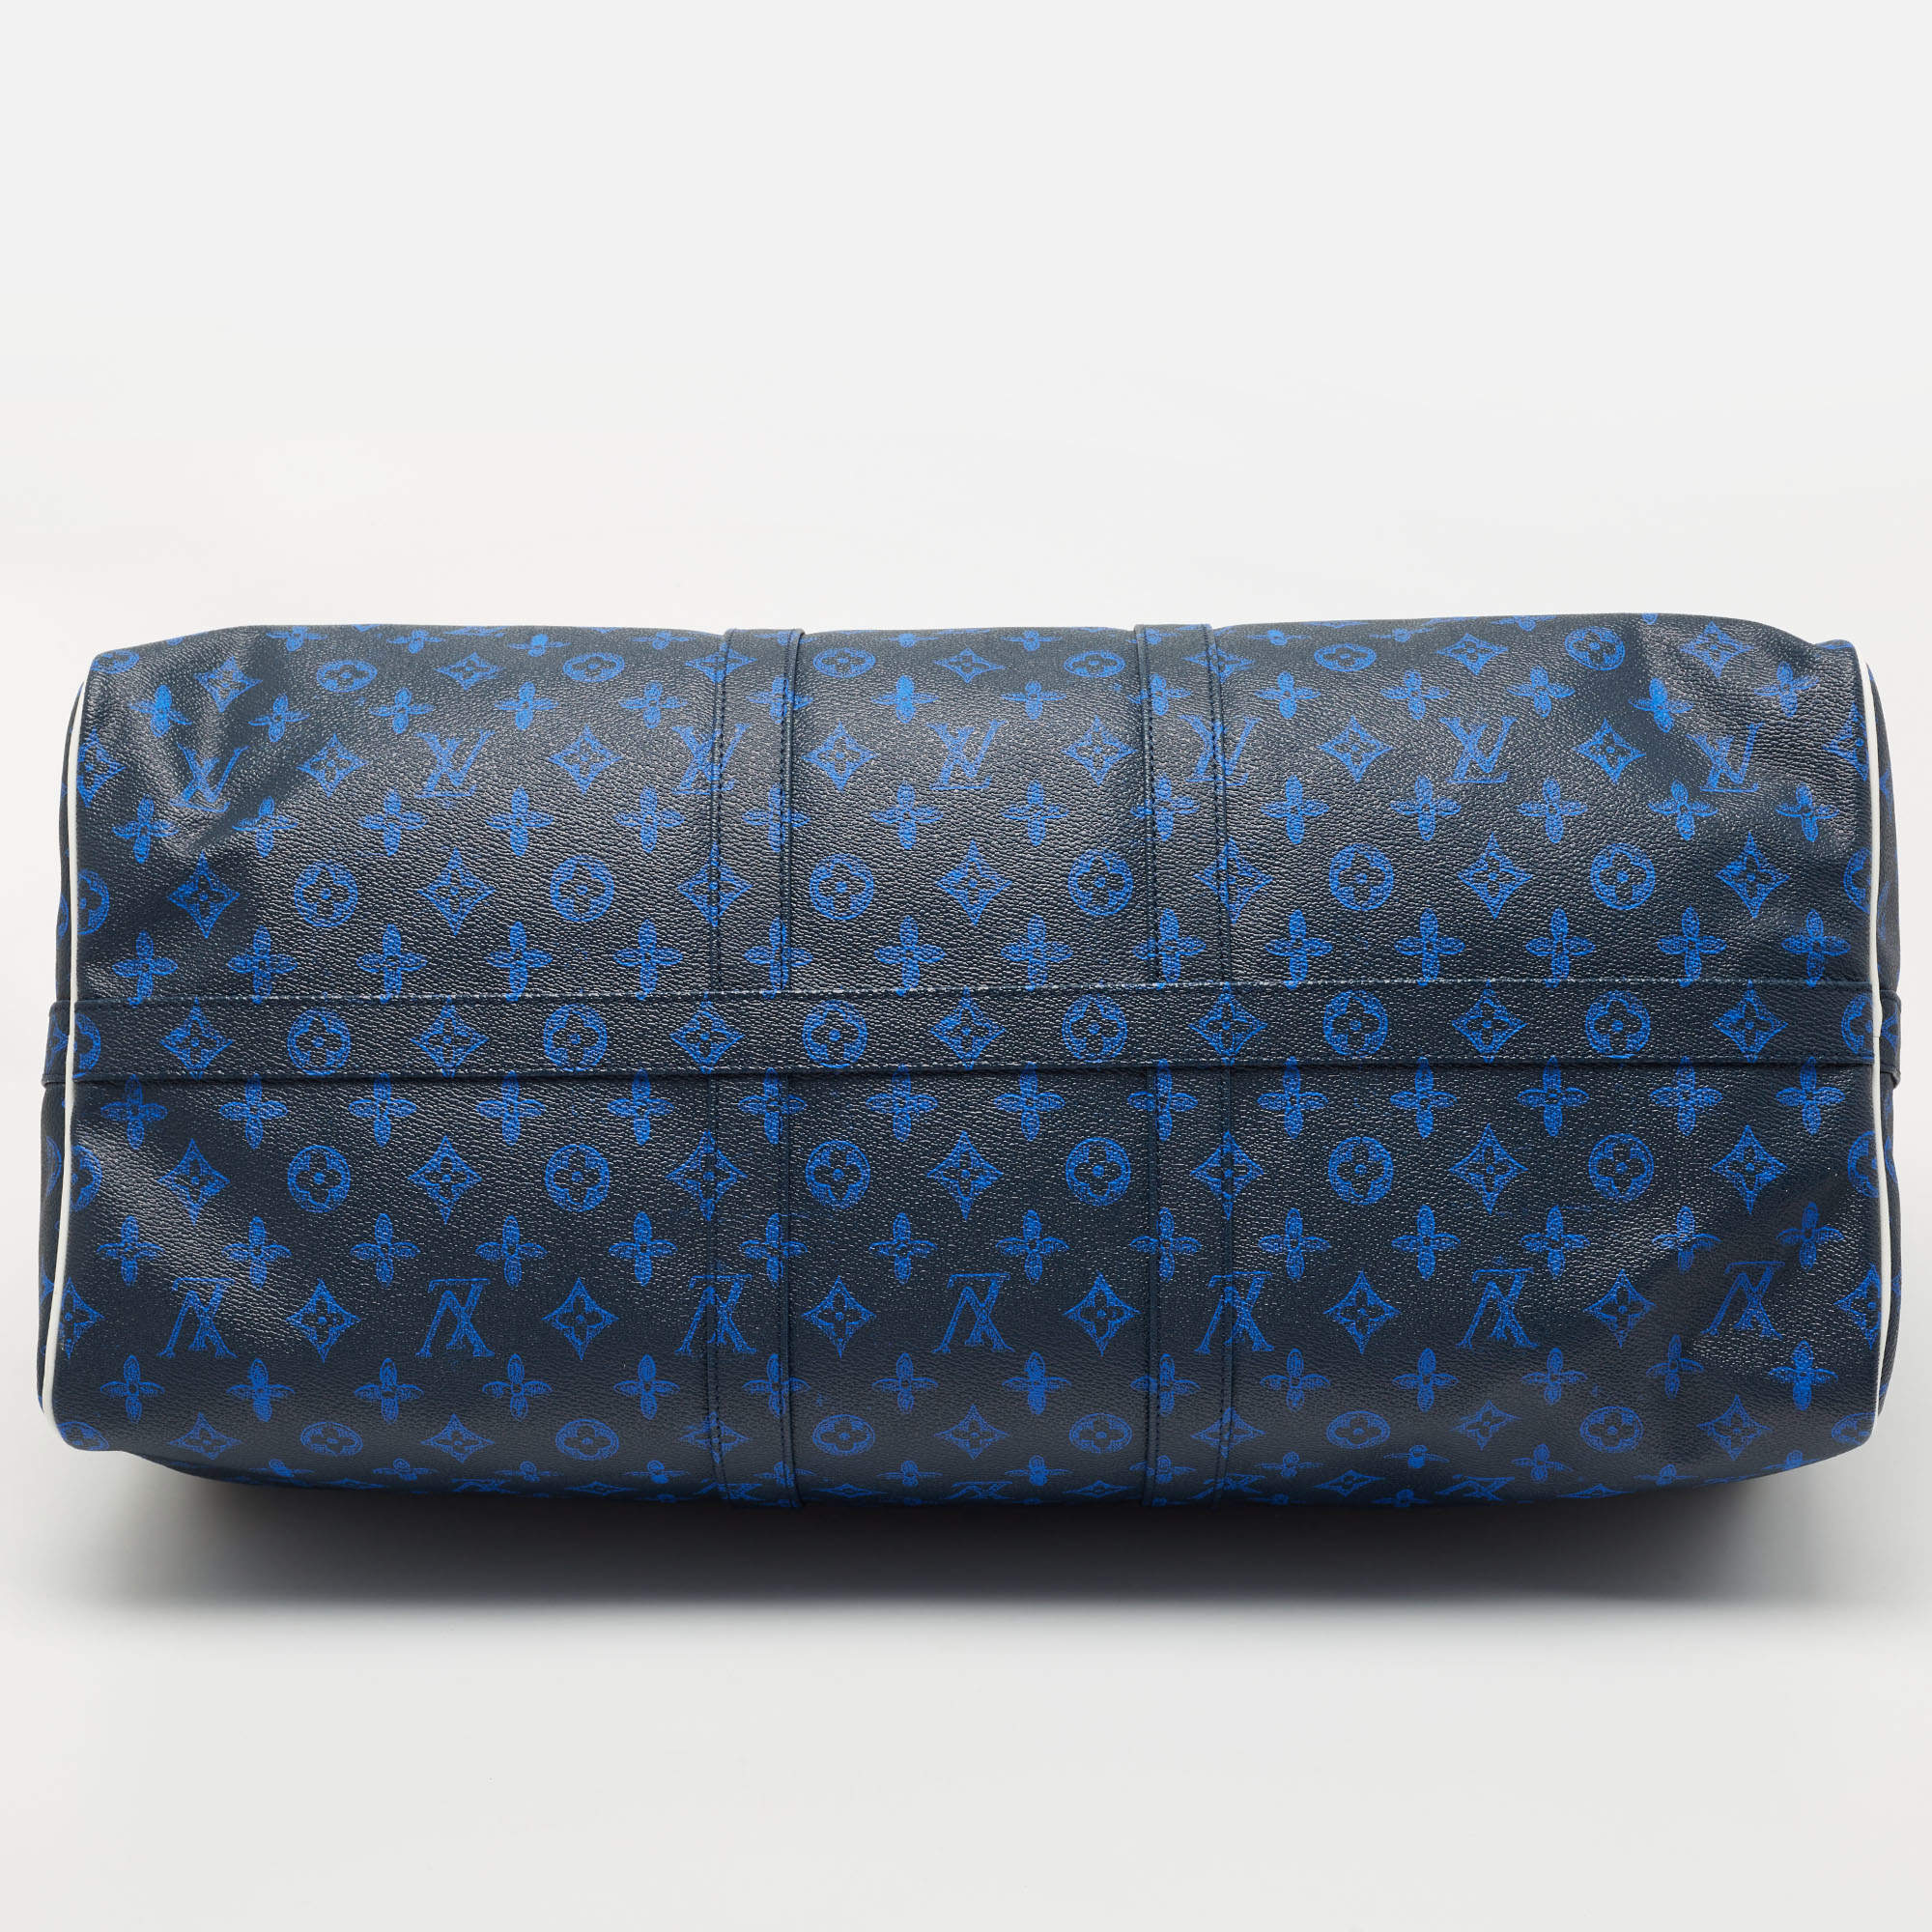 Louis Vuitton Monogram Everyday LV Keepall Bandoulière 55 - Blue  Weekenders, Bags - LOU778398